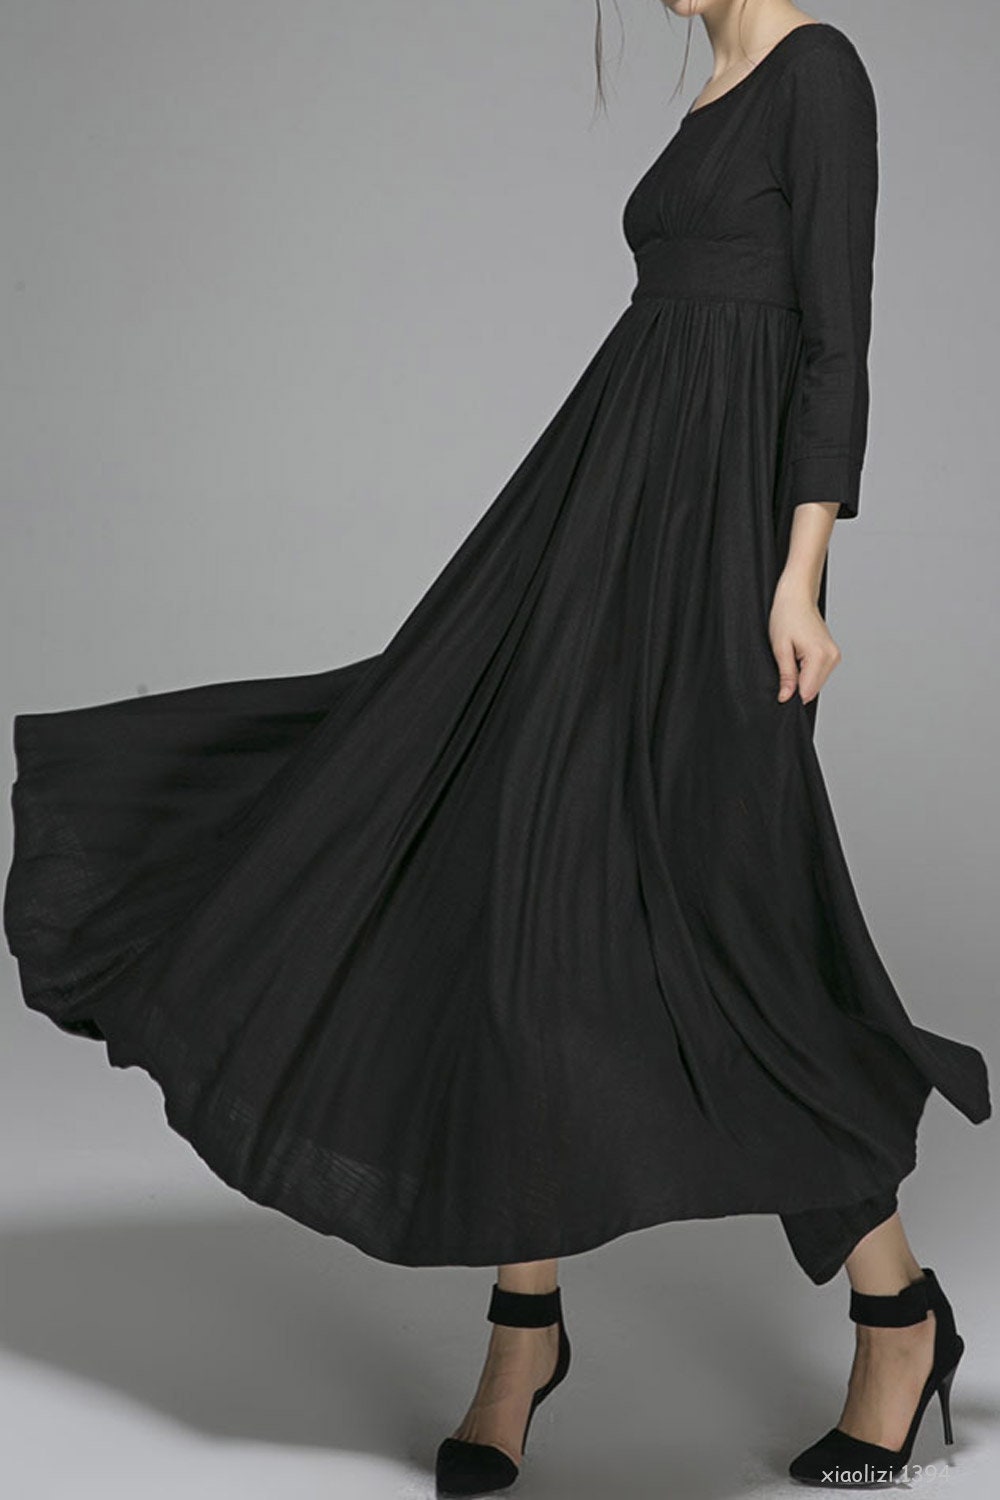 Empire Waist Dress Vintage Style Maxi Dress Black Linen | Etsy